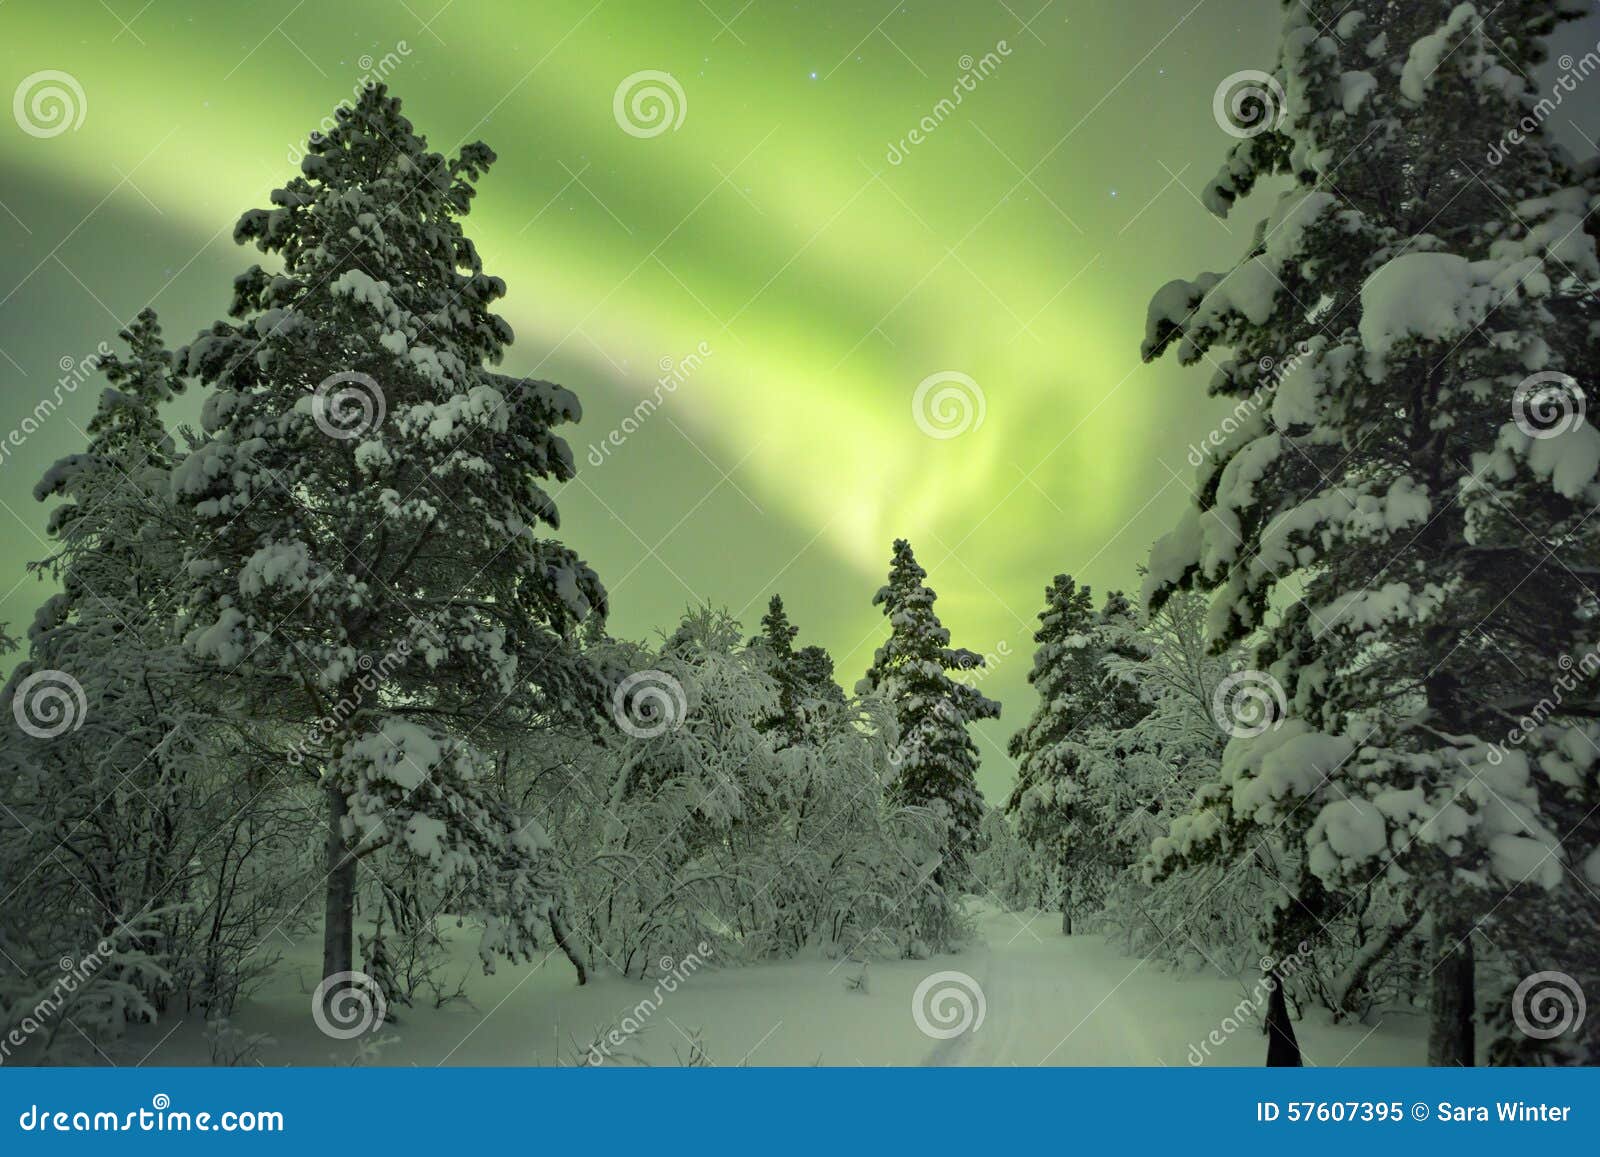 aurora borealis over a path through winter landscape, finnish la